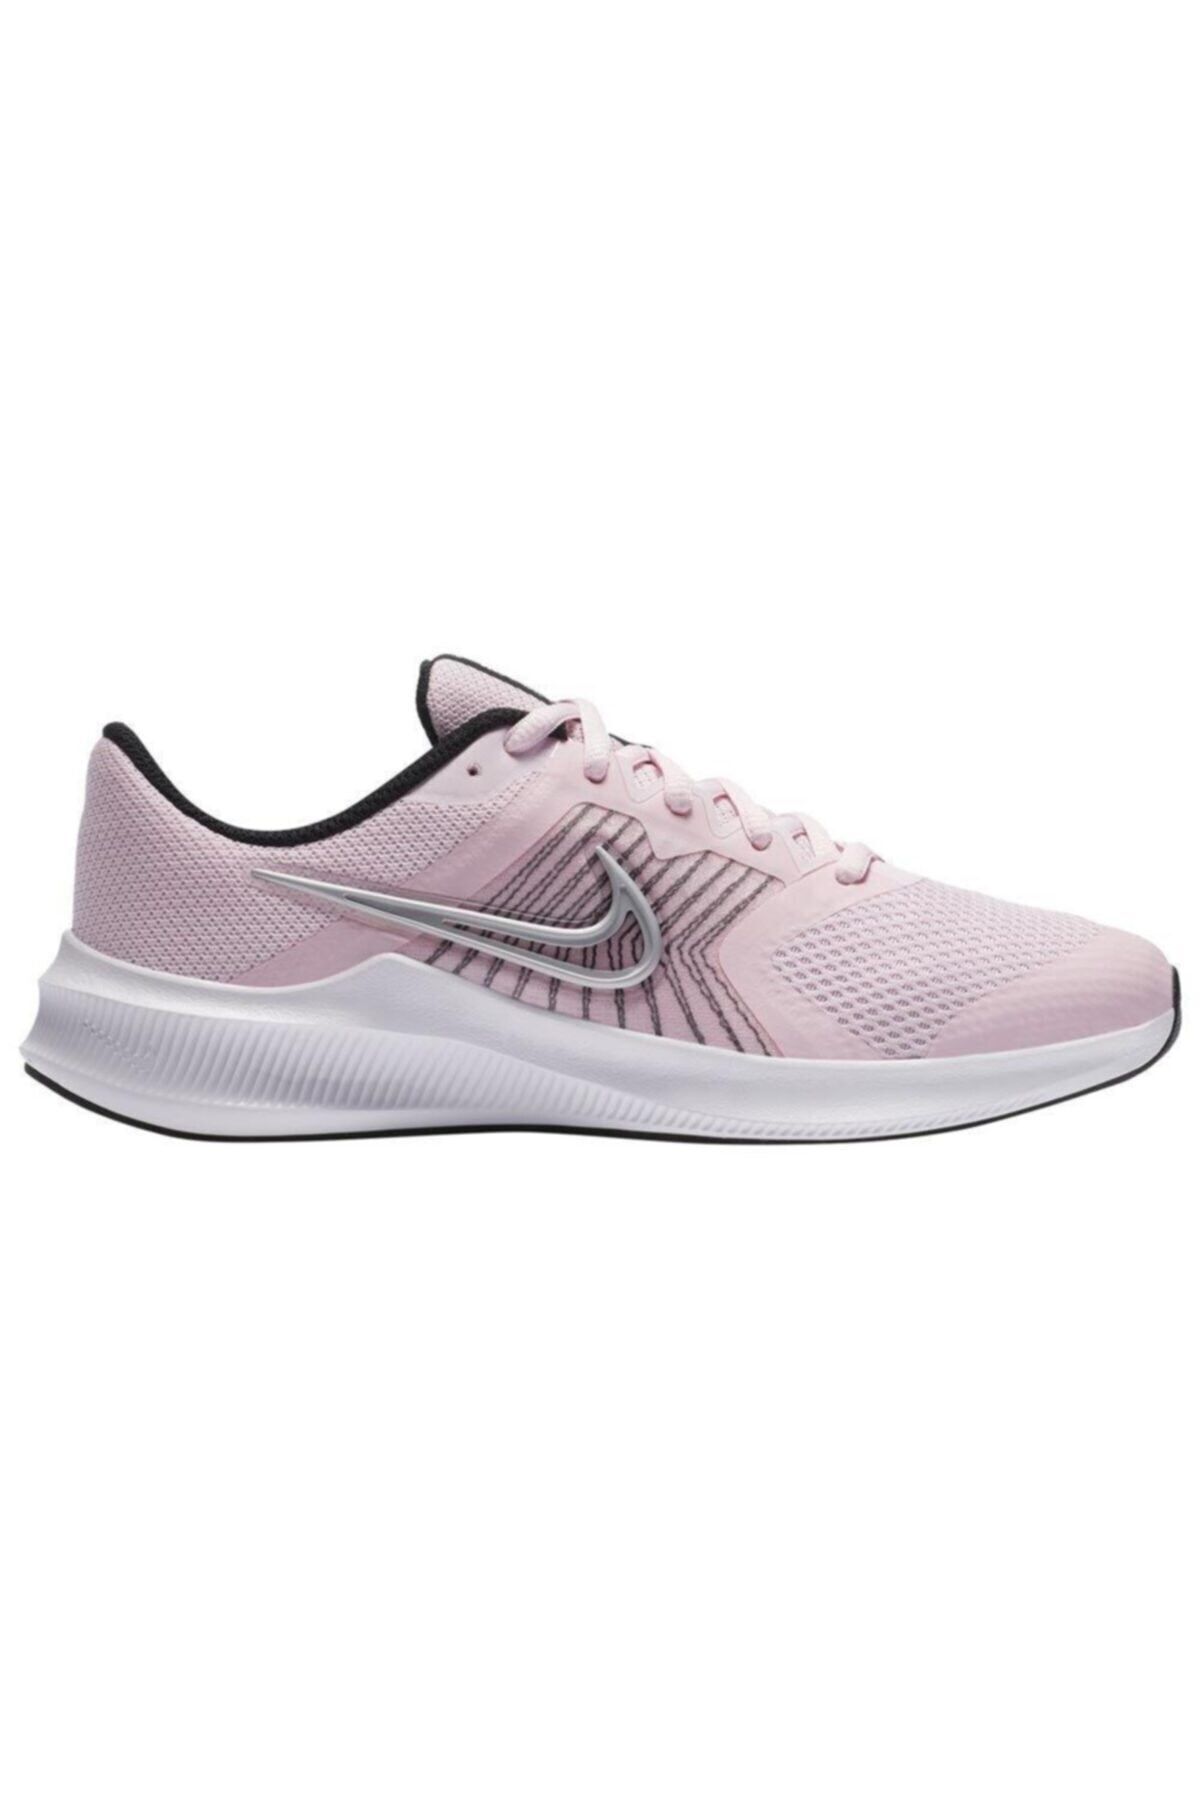 Nike Downshifter 11 (GS) Kadın Yürüyüş Koşu Ayakkabı Cz3949-605-pembe